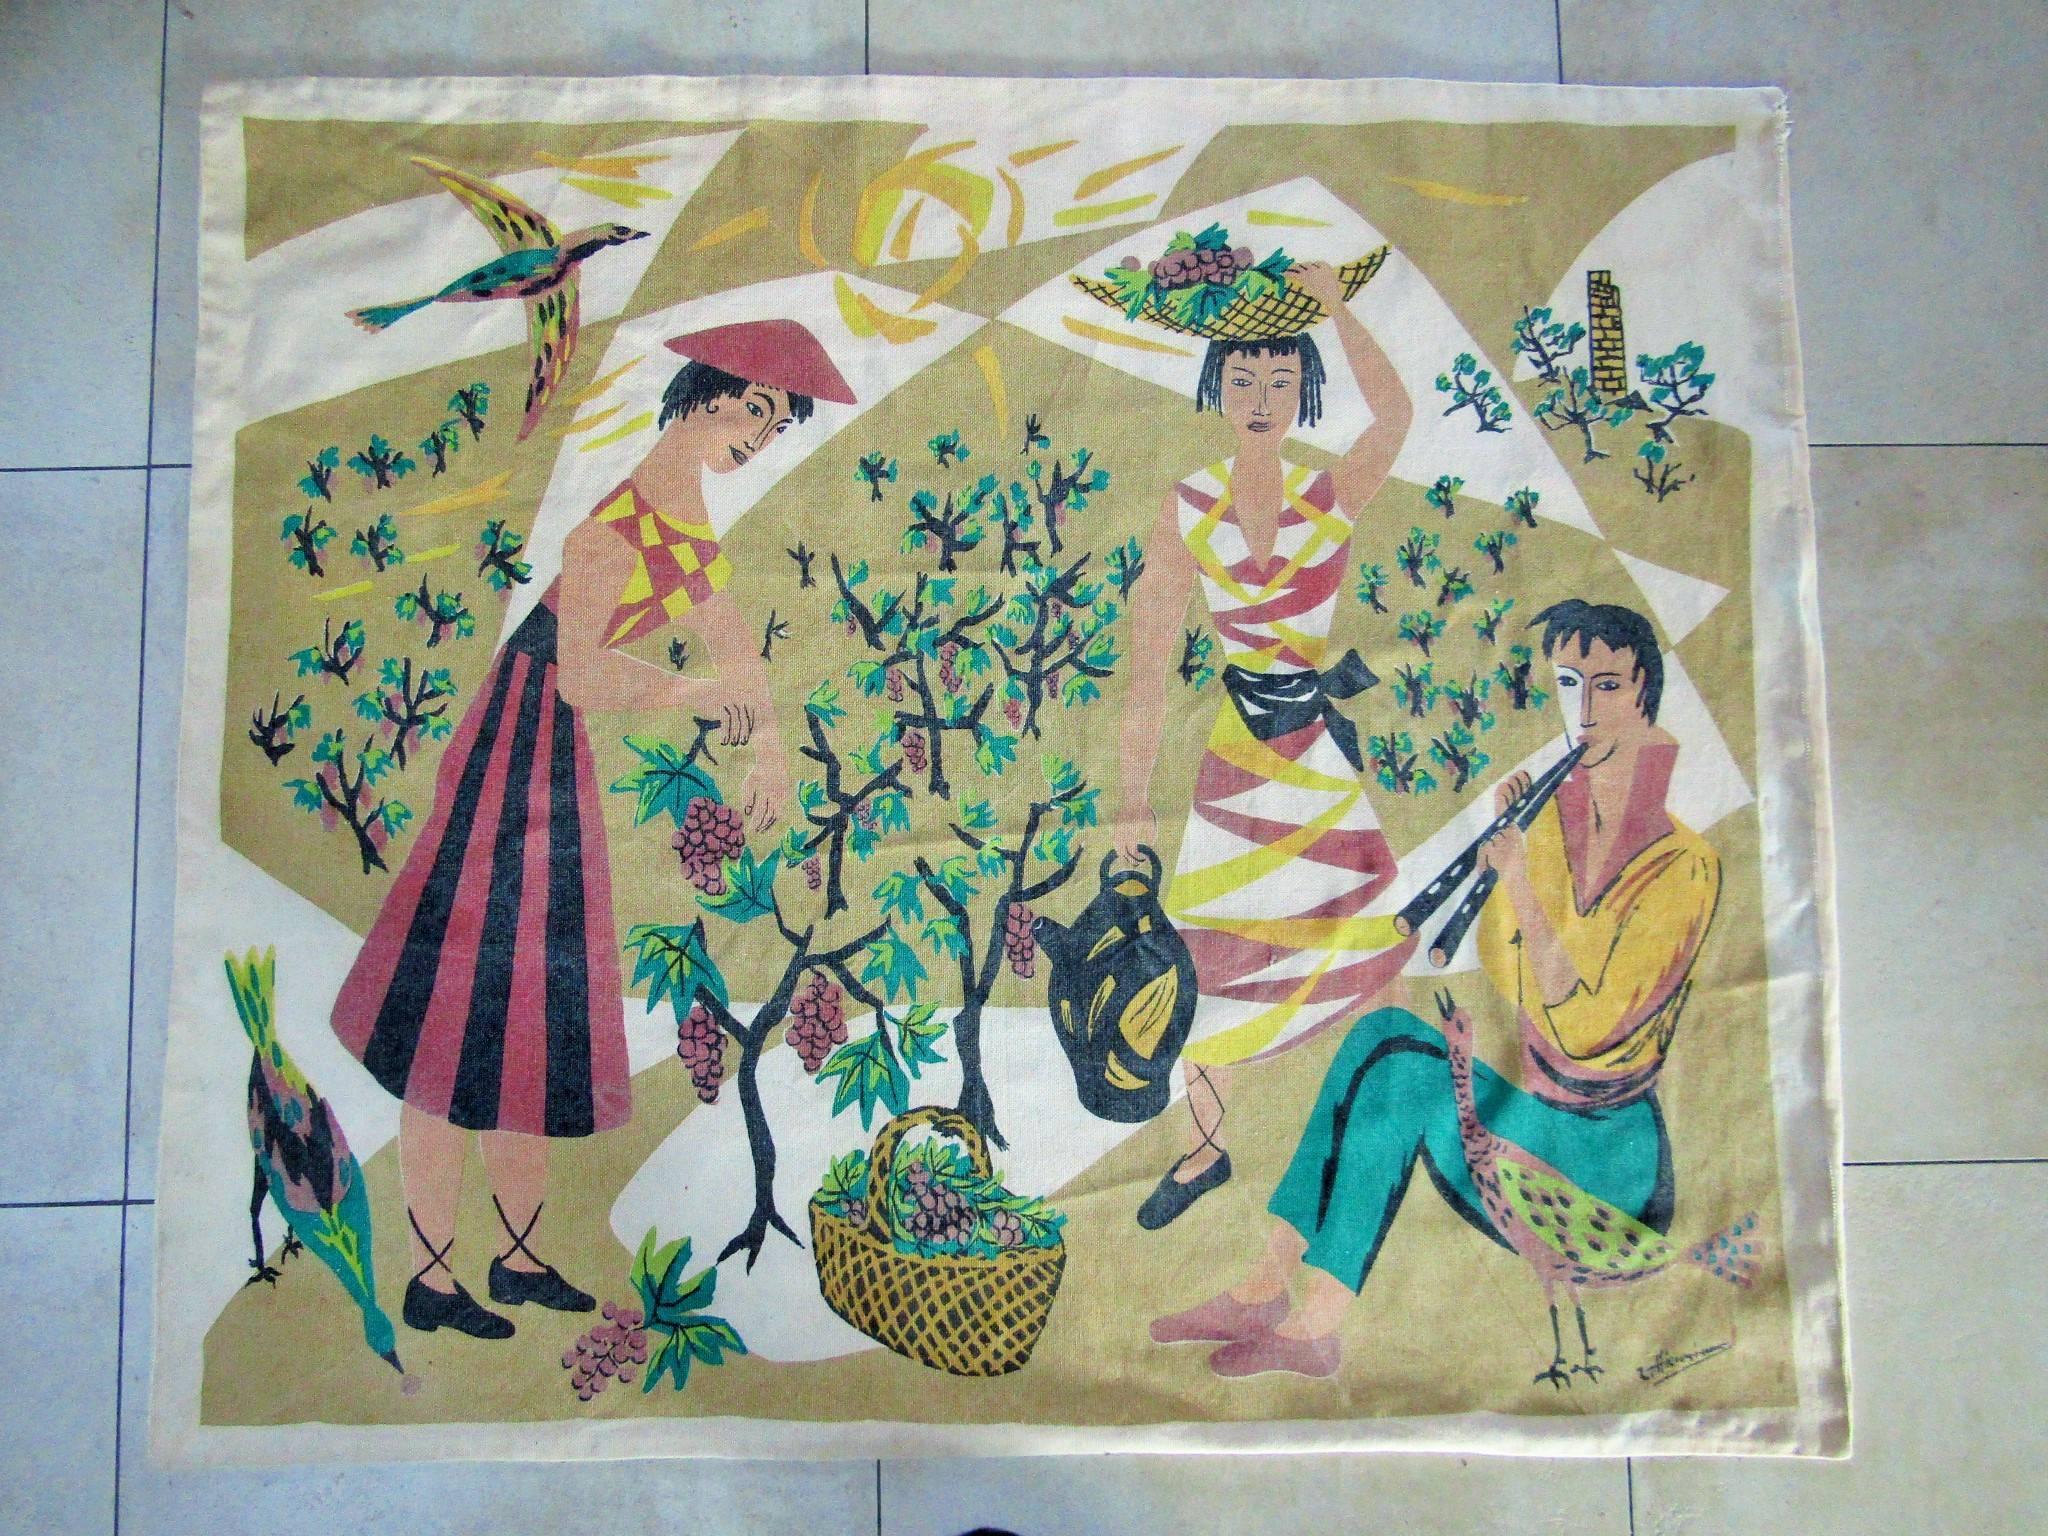 Französischer Wandteppich aus der Mitte des Jahrhunderts, etikettiert vom Hersteller Corot, Frankreich, um 1965. Kubistische Musikerszene mit Mädchen.

Maße: Breite 134 cm (52,8 Zoll),
länge 114 cm (44,9 Zoll).

Anmerkung: Kubismus der 1960er